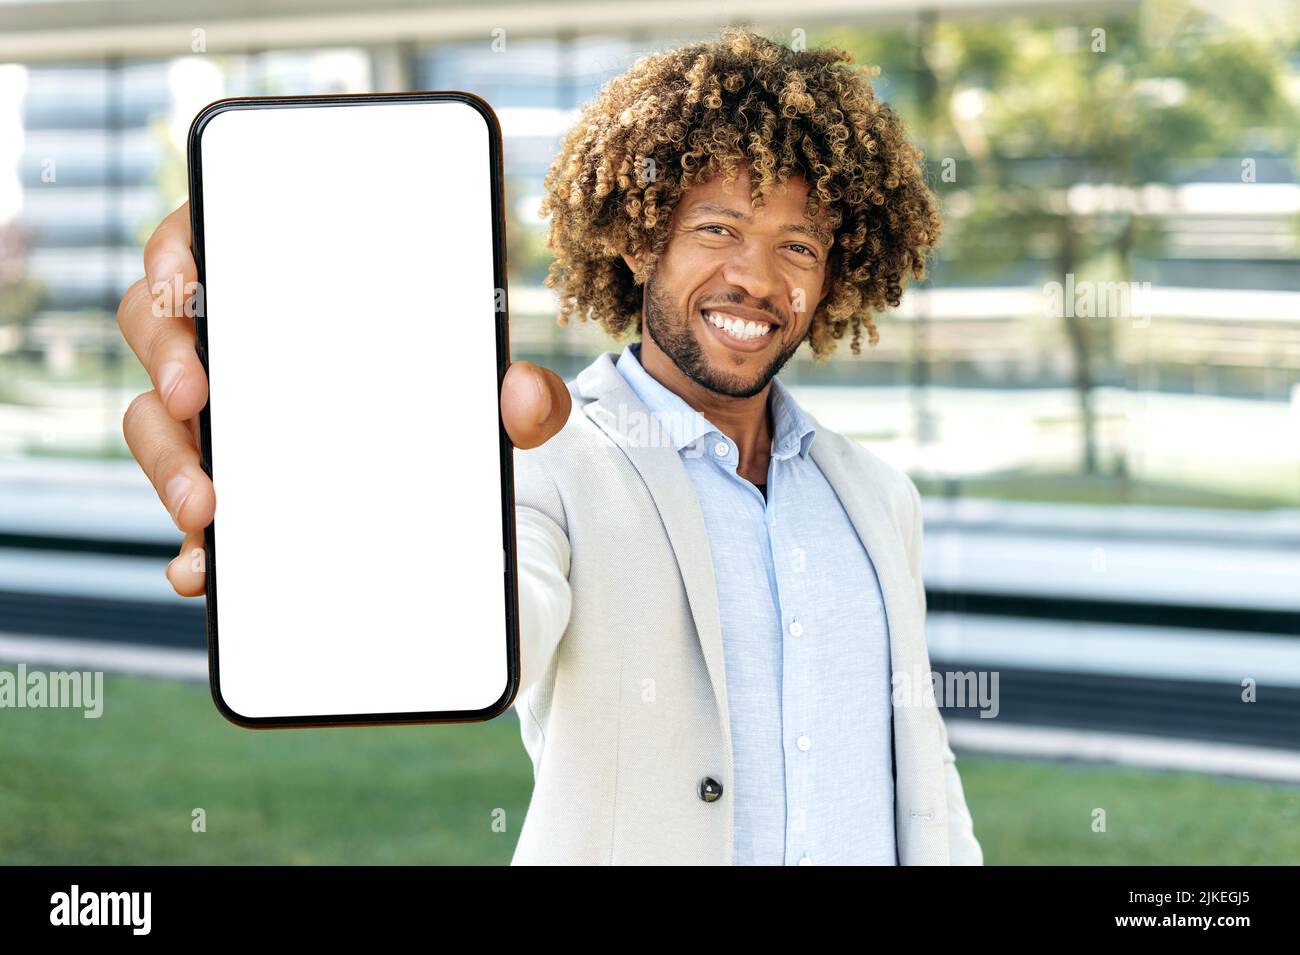 Positiv attraktiver afroamerikanischer oder brasilianischer lockiger Mann, steht im Freien, zeigt Smartphone mit leerem weißen Mockup-Bildschirm mit Platz für Werbung, Präsentation, schaut auf Kamera, lächelt Stockfoto